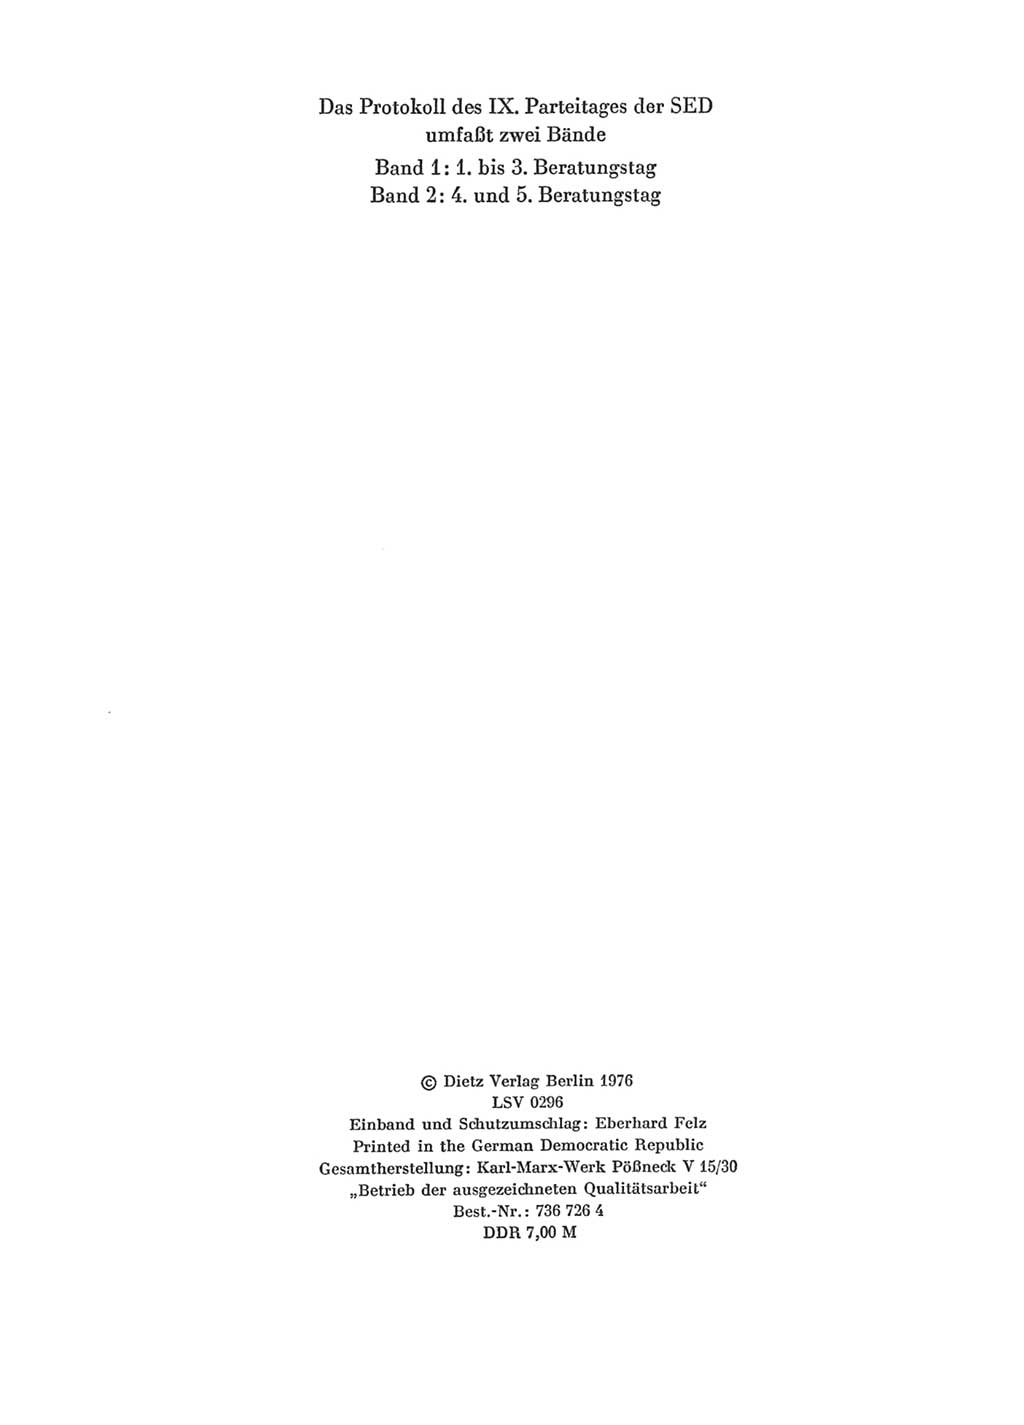 Protokoll der Verhandlungen des Ⅸ. Parteitages der Sozialistischen Einheitspartei Deutschlands (SED) [Deutsche Demokratische Republik (DDR)] 1976, Band 1, Seite 4 (Prot. Verh. Ⅸ. PT SED DDR 1976, Bd. 1, S. 4)